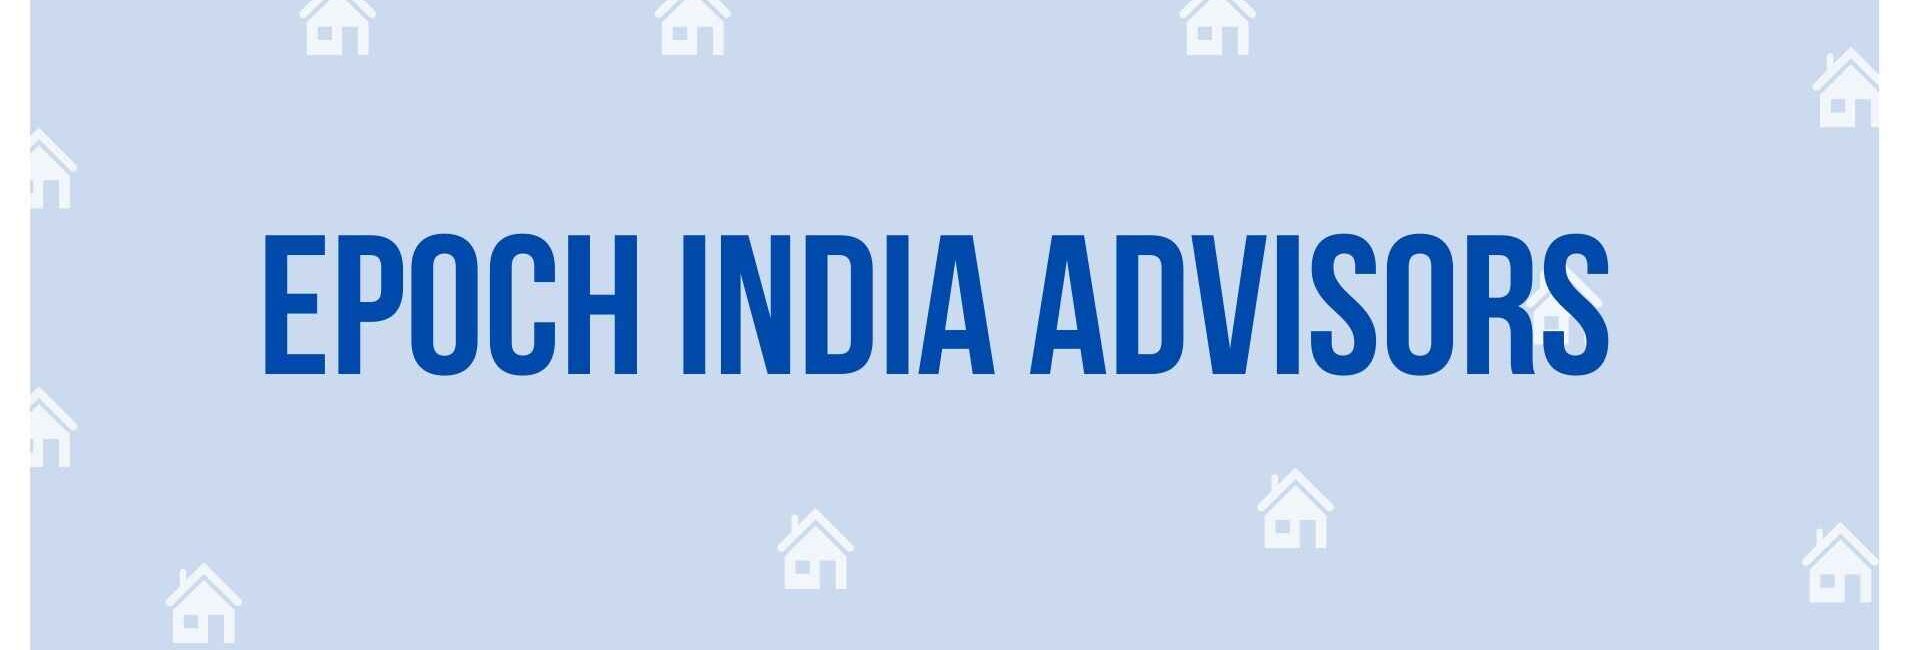 Epoch India Advisors - Property Dealer in Noida